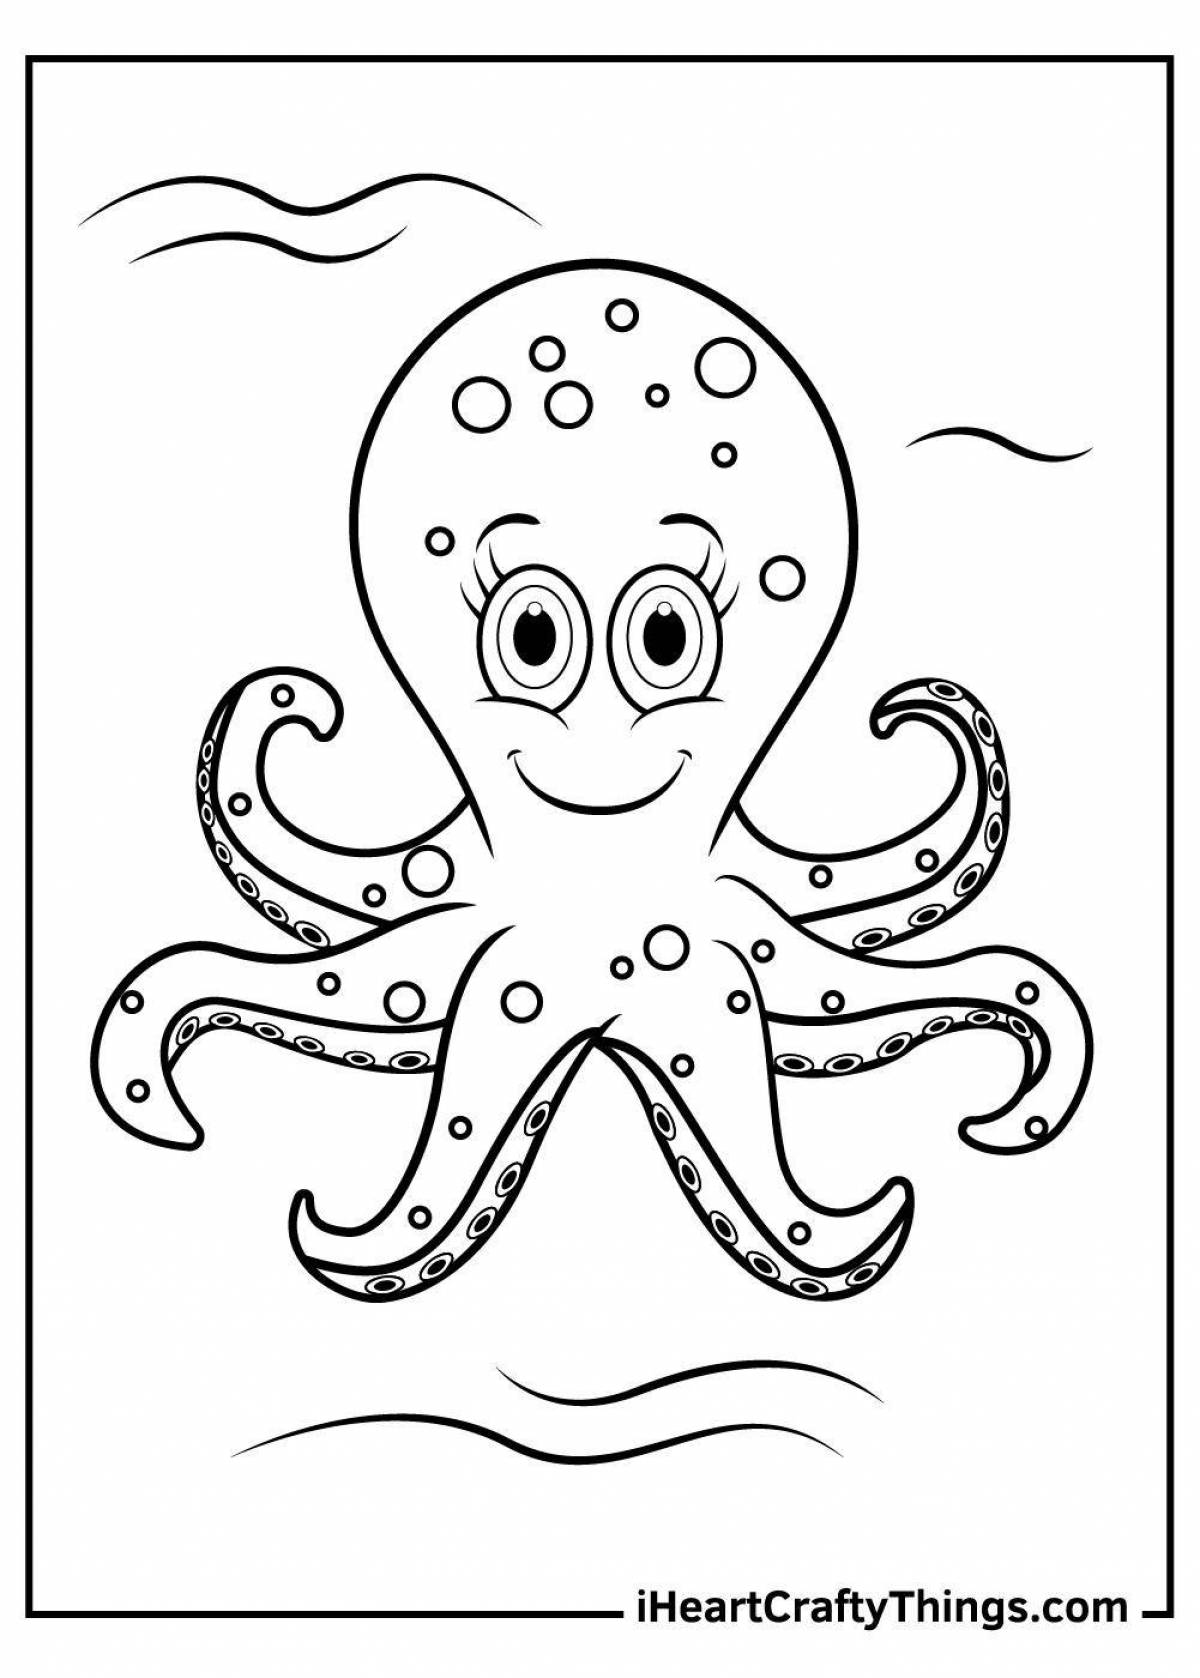 Fantastic coloring of a flip octopus